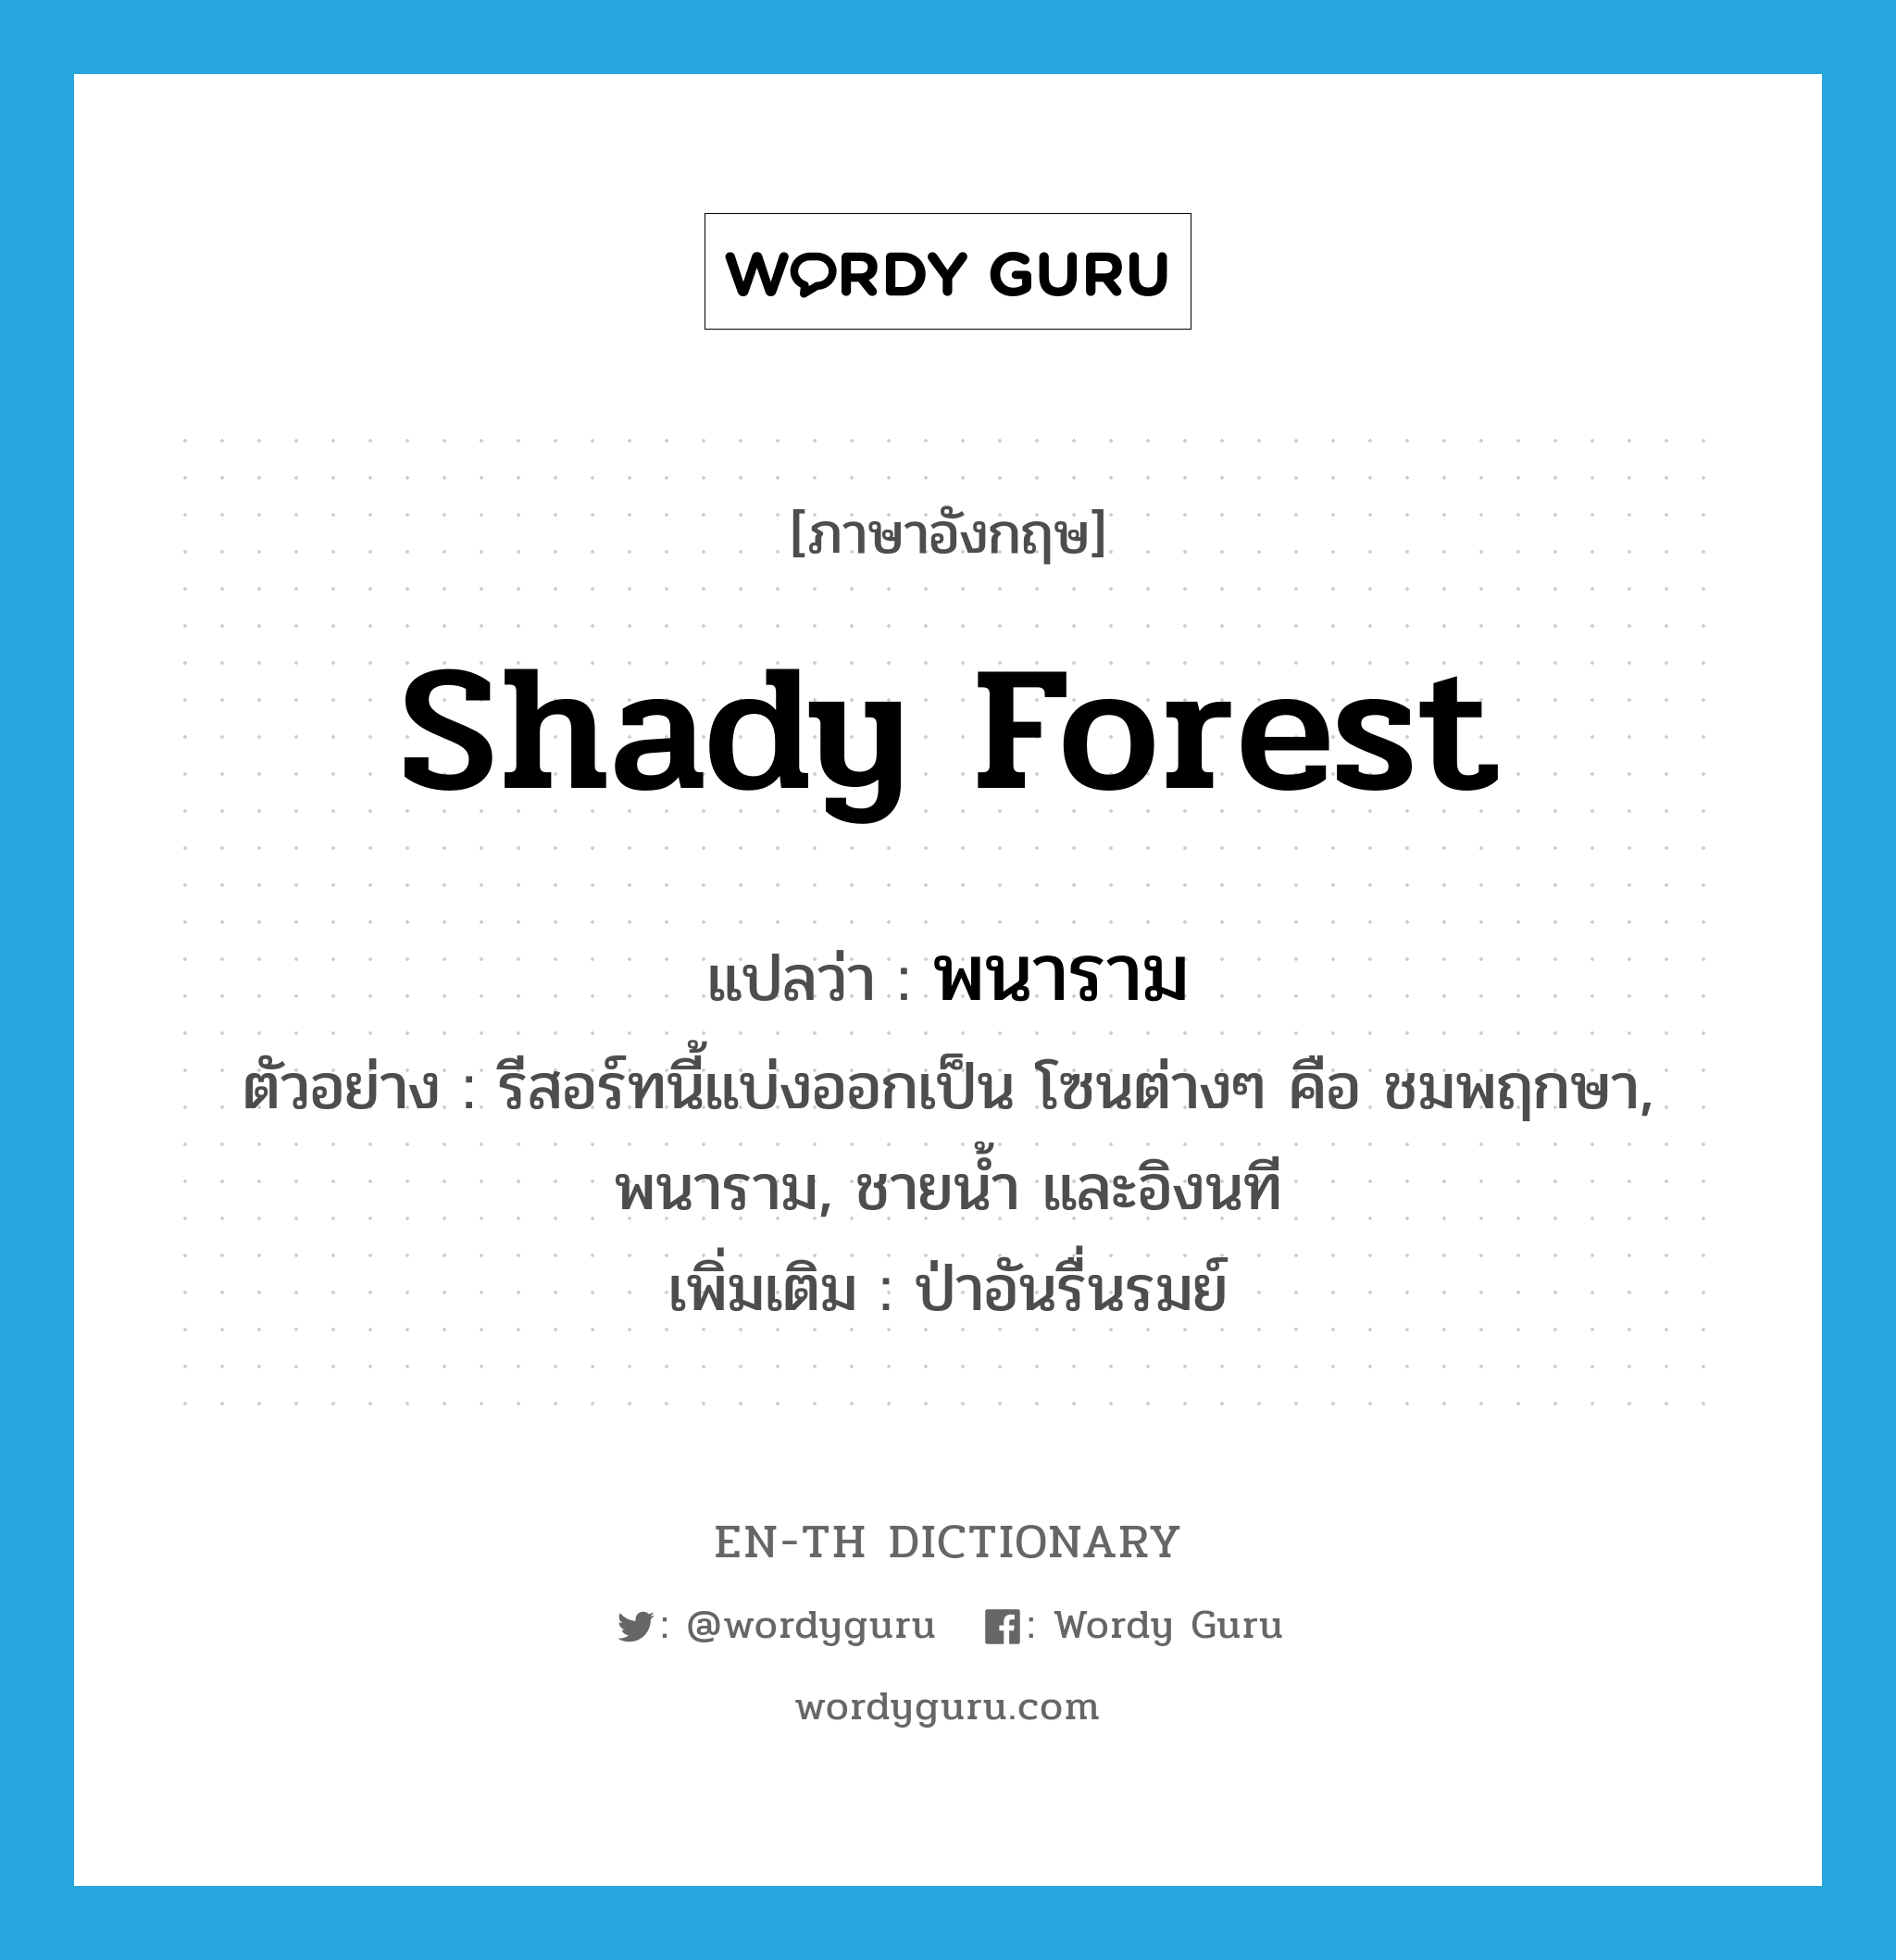 shady forest แปลว่า?, คำศัพท์ภาษาอังกฤษ shady forest แปลว่า พนาราม ประเภท N ตัวอย่าง รีสอร์ทนี้แบ่งออกเป็น โซนต่างๆ คือ ชมพฤกษา, พนาราม, ชายน้ำ และอิงนที เพิ่มเติม ป่าอันรื่นรมย์ หมวด N